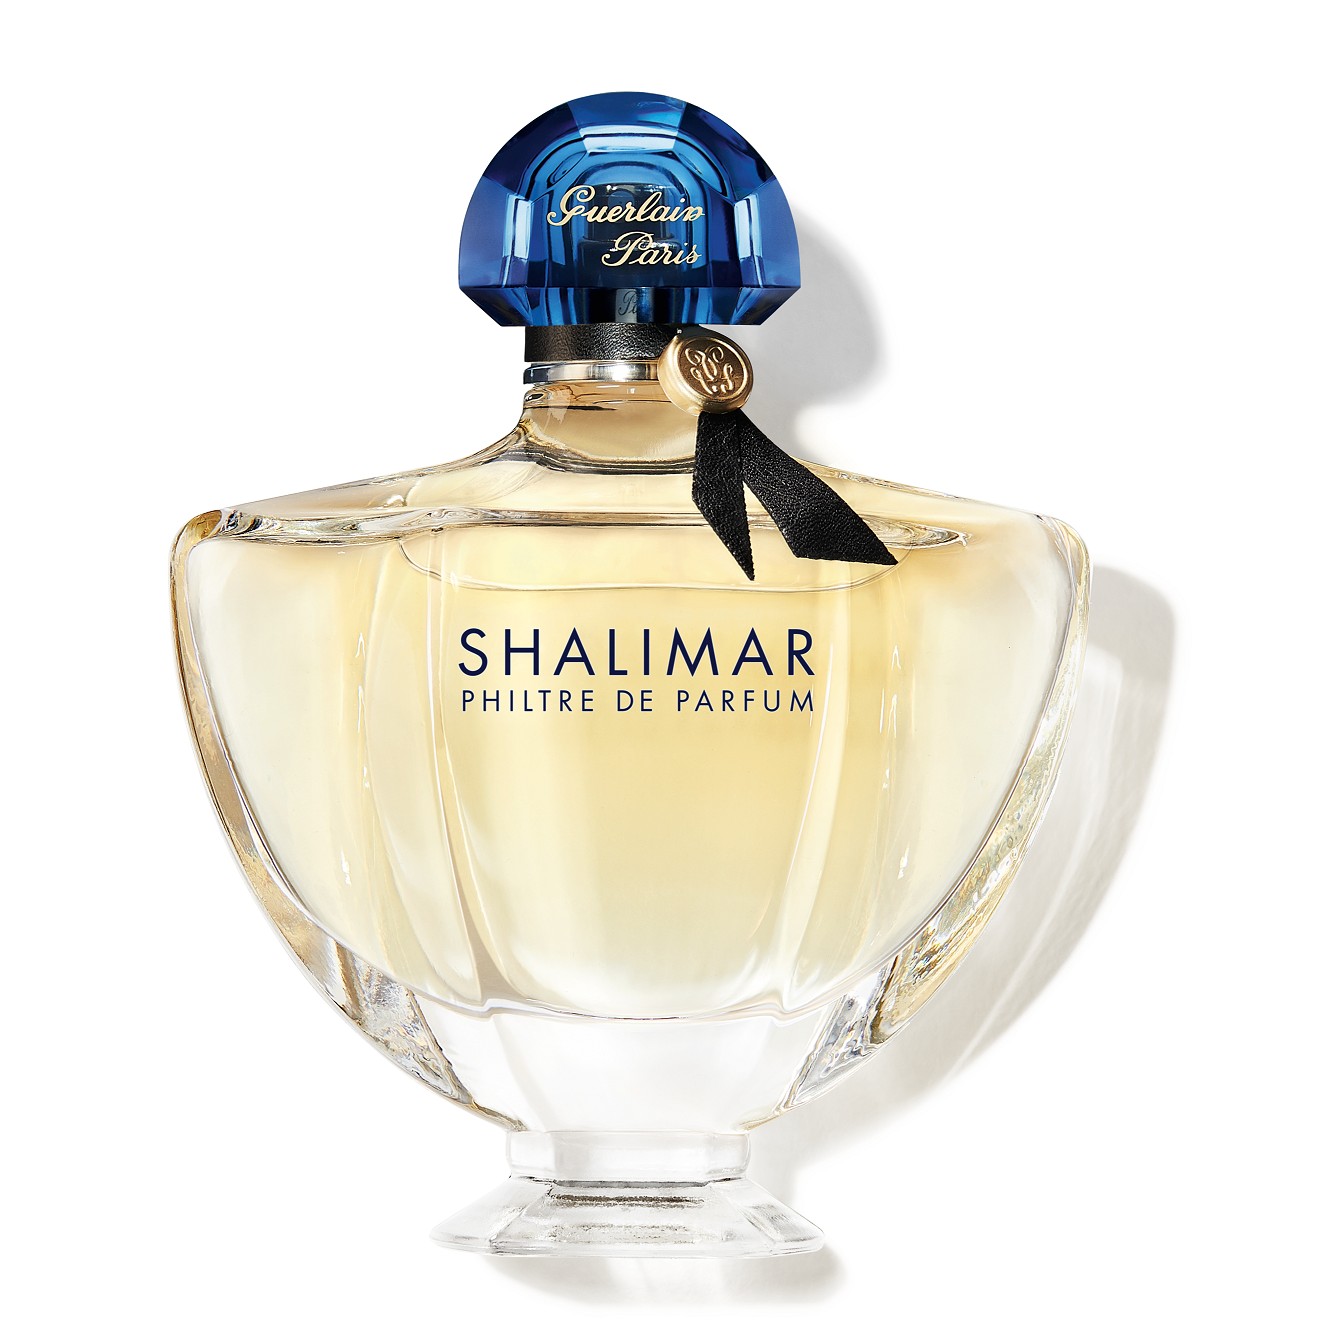 Изображение парфюма Guerlain Shalimar Philtre de Parfum